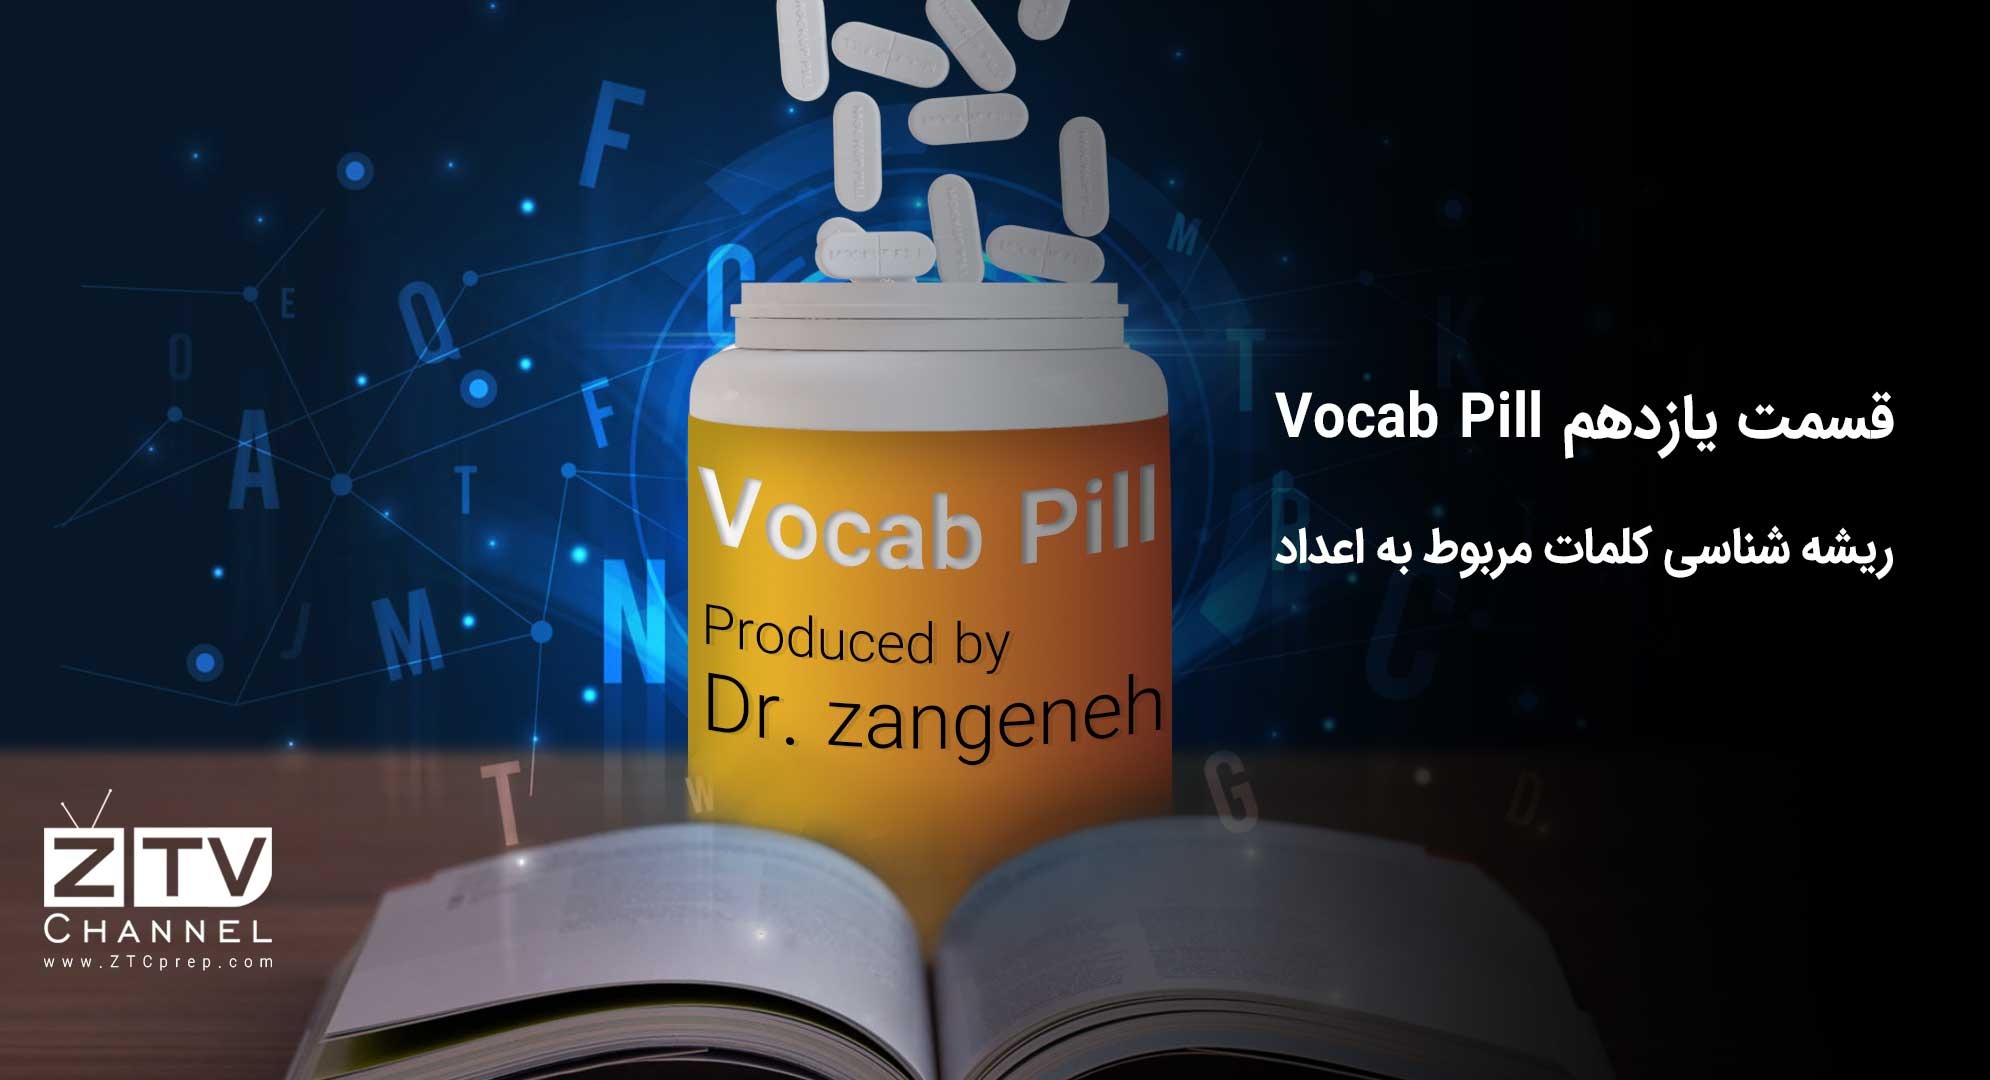 قسمت یازدهم Vocab Pill-ریشه شناسی کلمات مربوط به اعداد